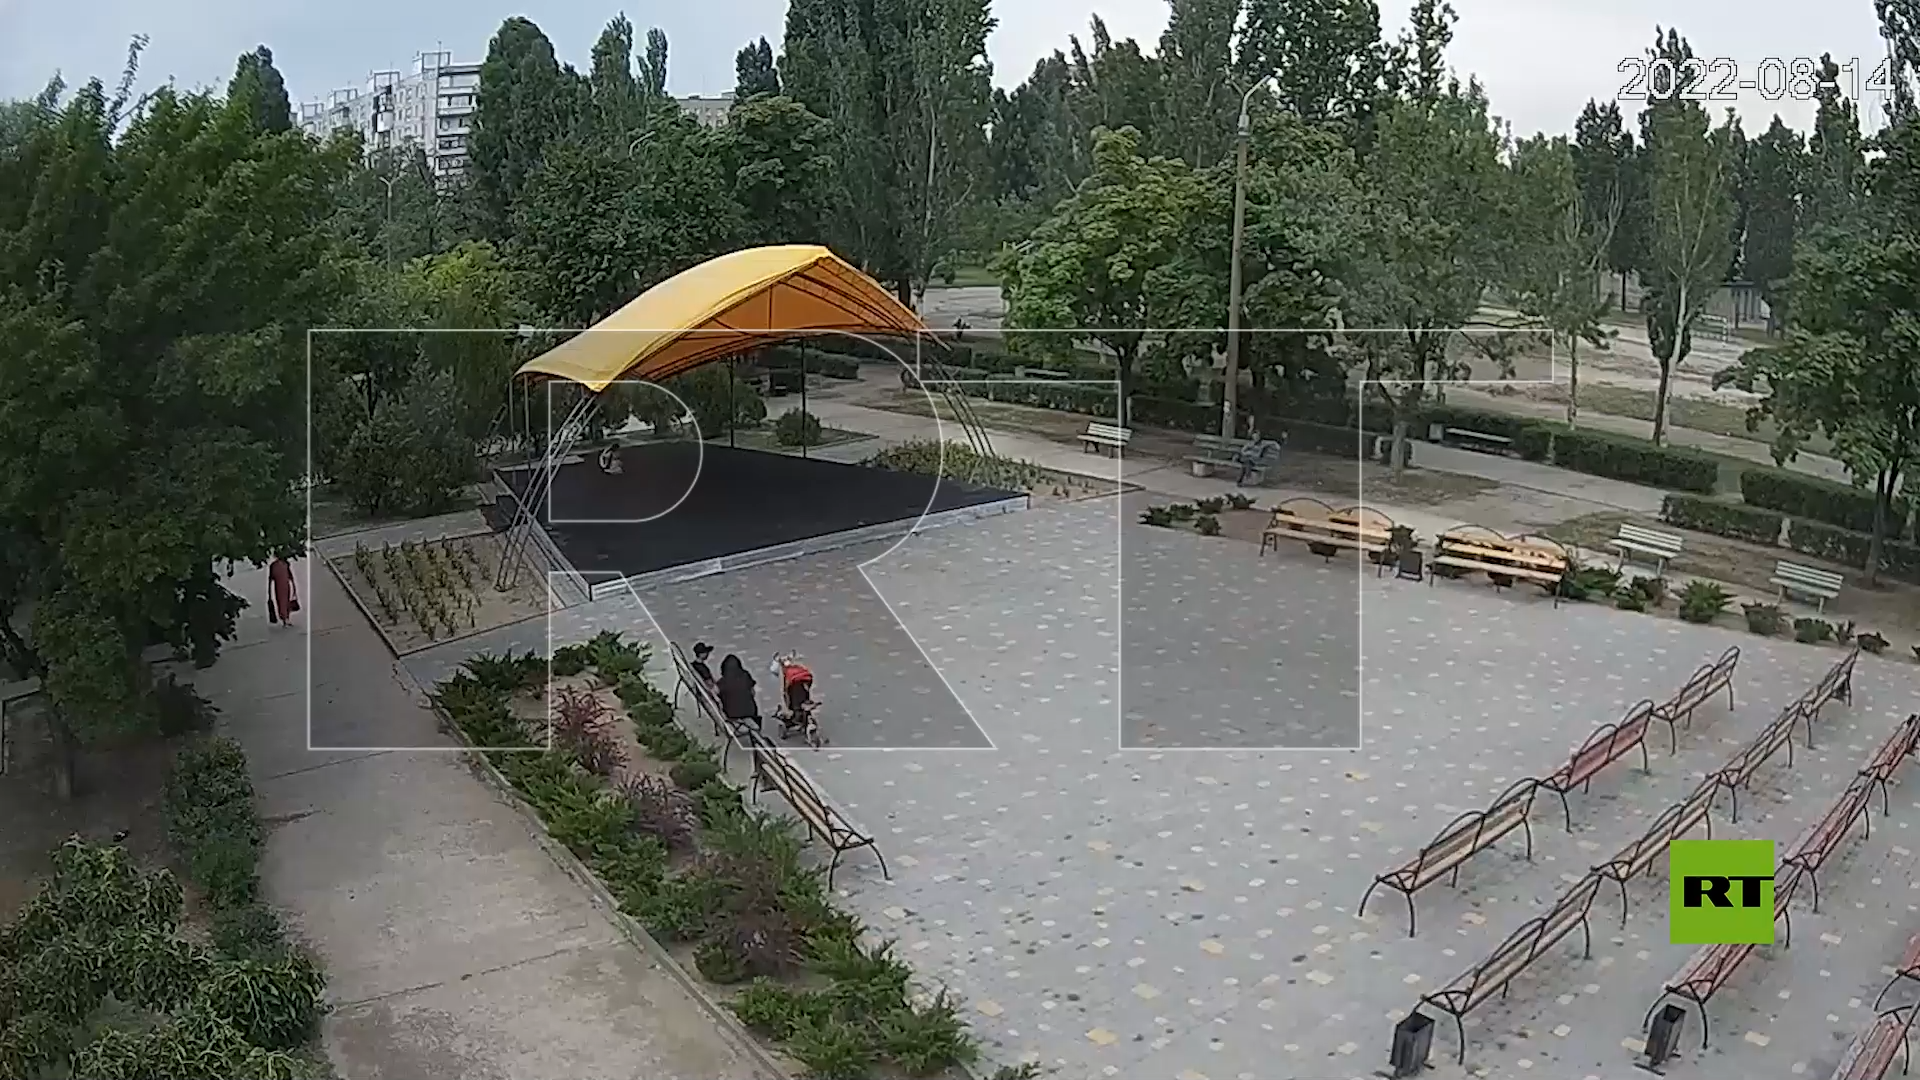 الكاميرا ترصد لحظة قصف أوكراني قرب محطة للطاقة النووية